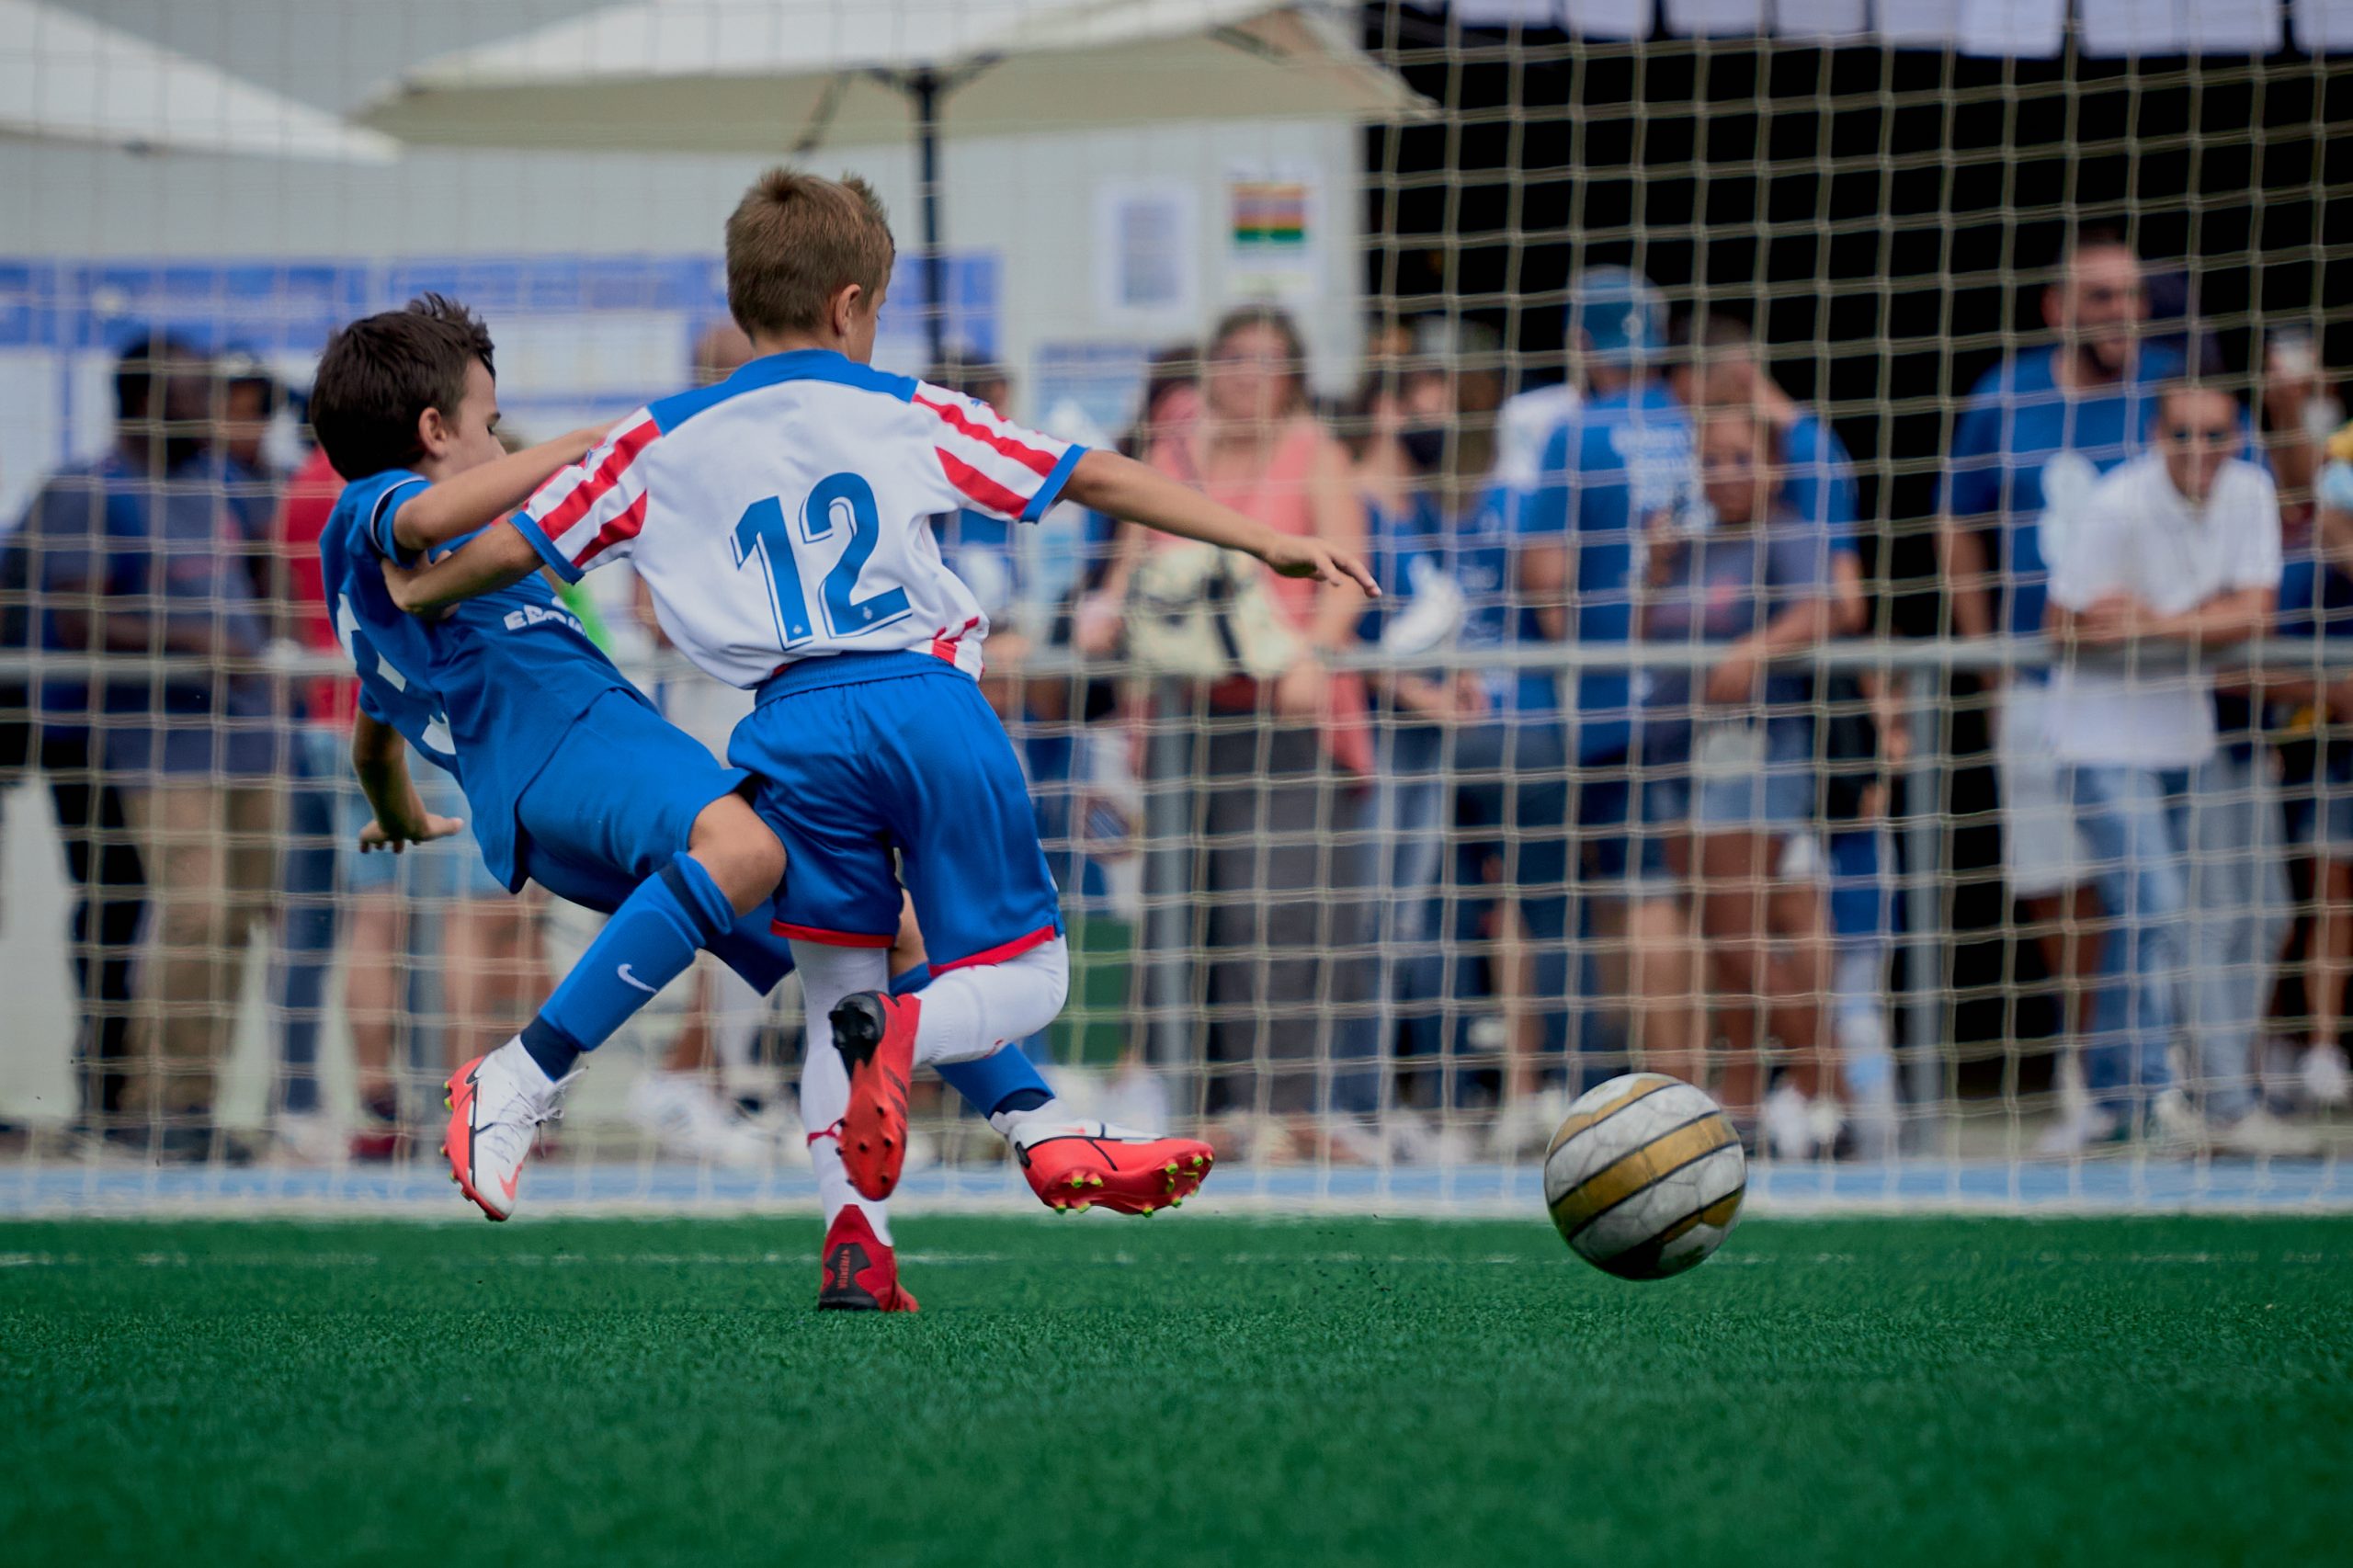 Fotografía - David se lanza con determinación para realizar un tackle y arrebatar el balón al oponente. Una escena llena de acción que muestra la intensidad del momento.